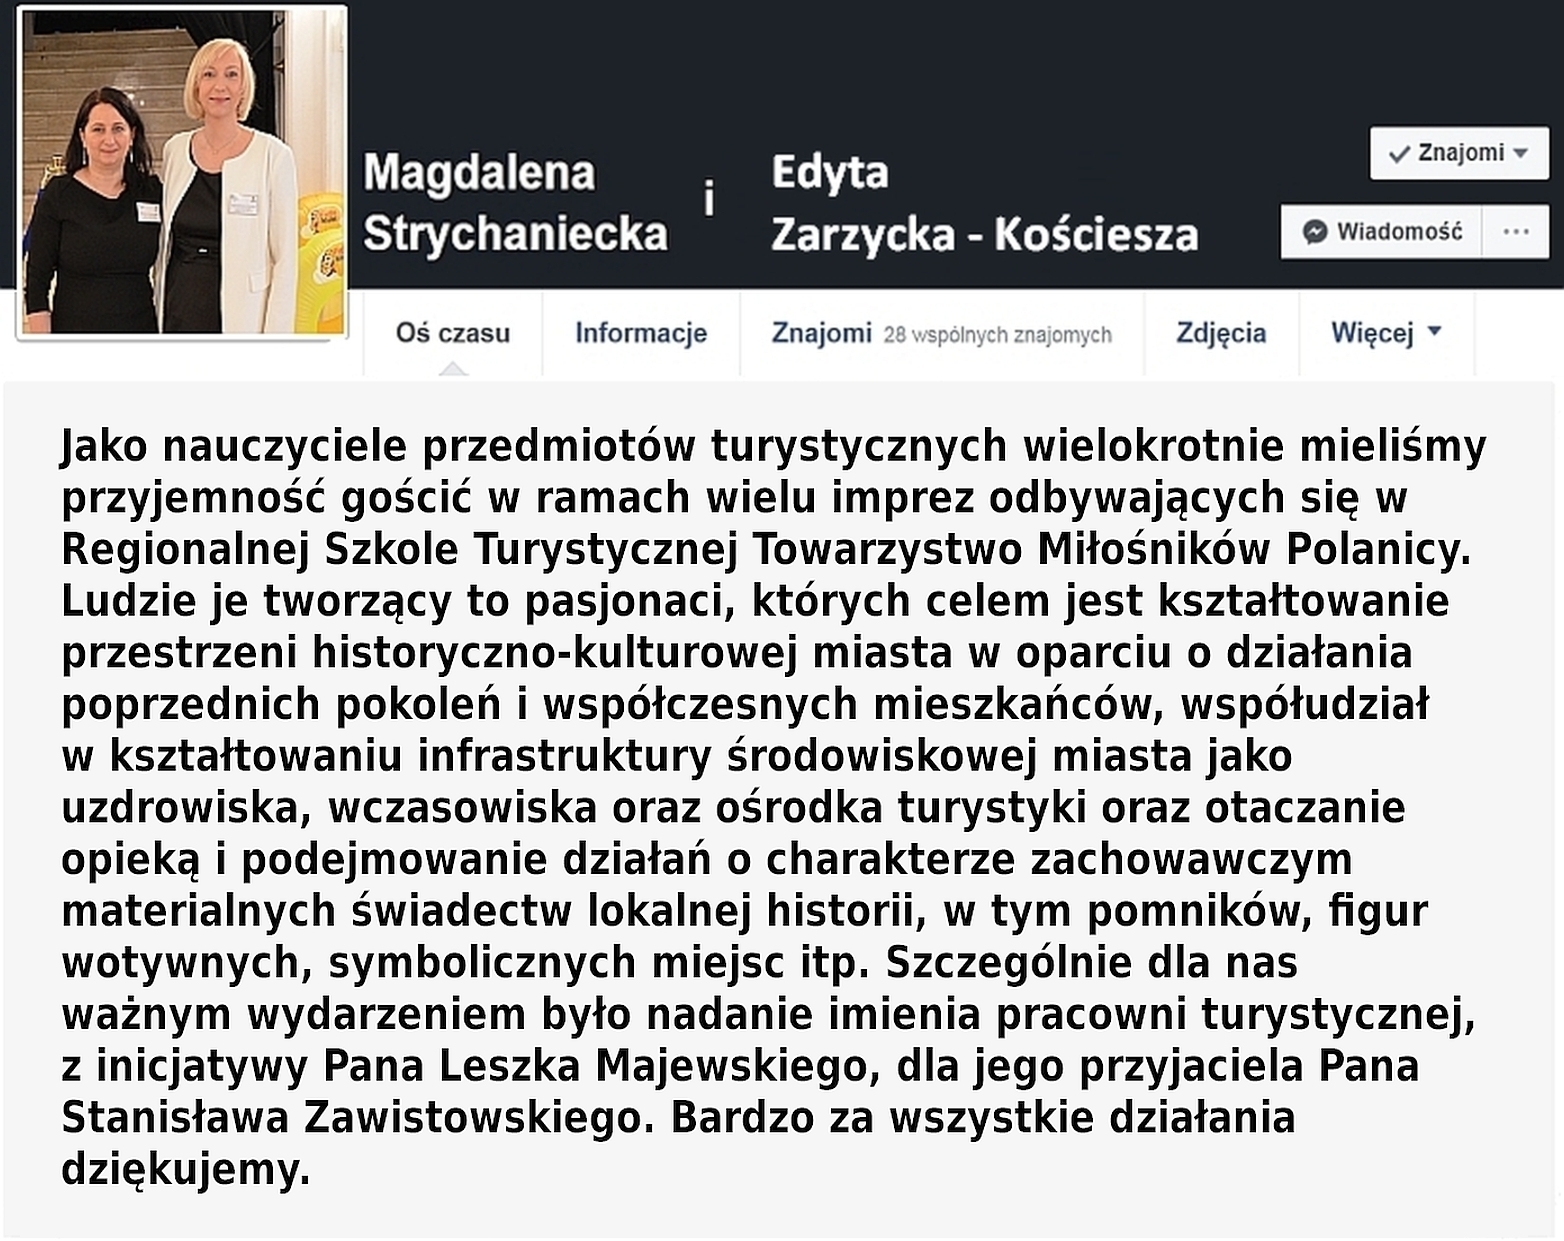 01.TMP Magdalena Strychaniecka i Edyta Zarzycka Kościesza